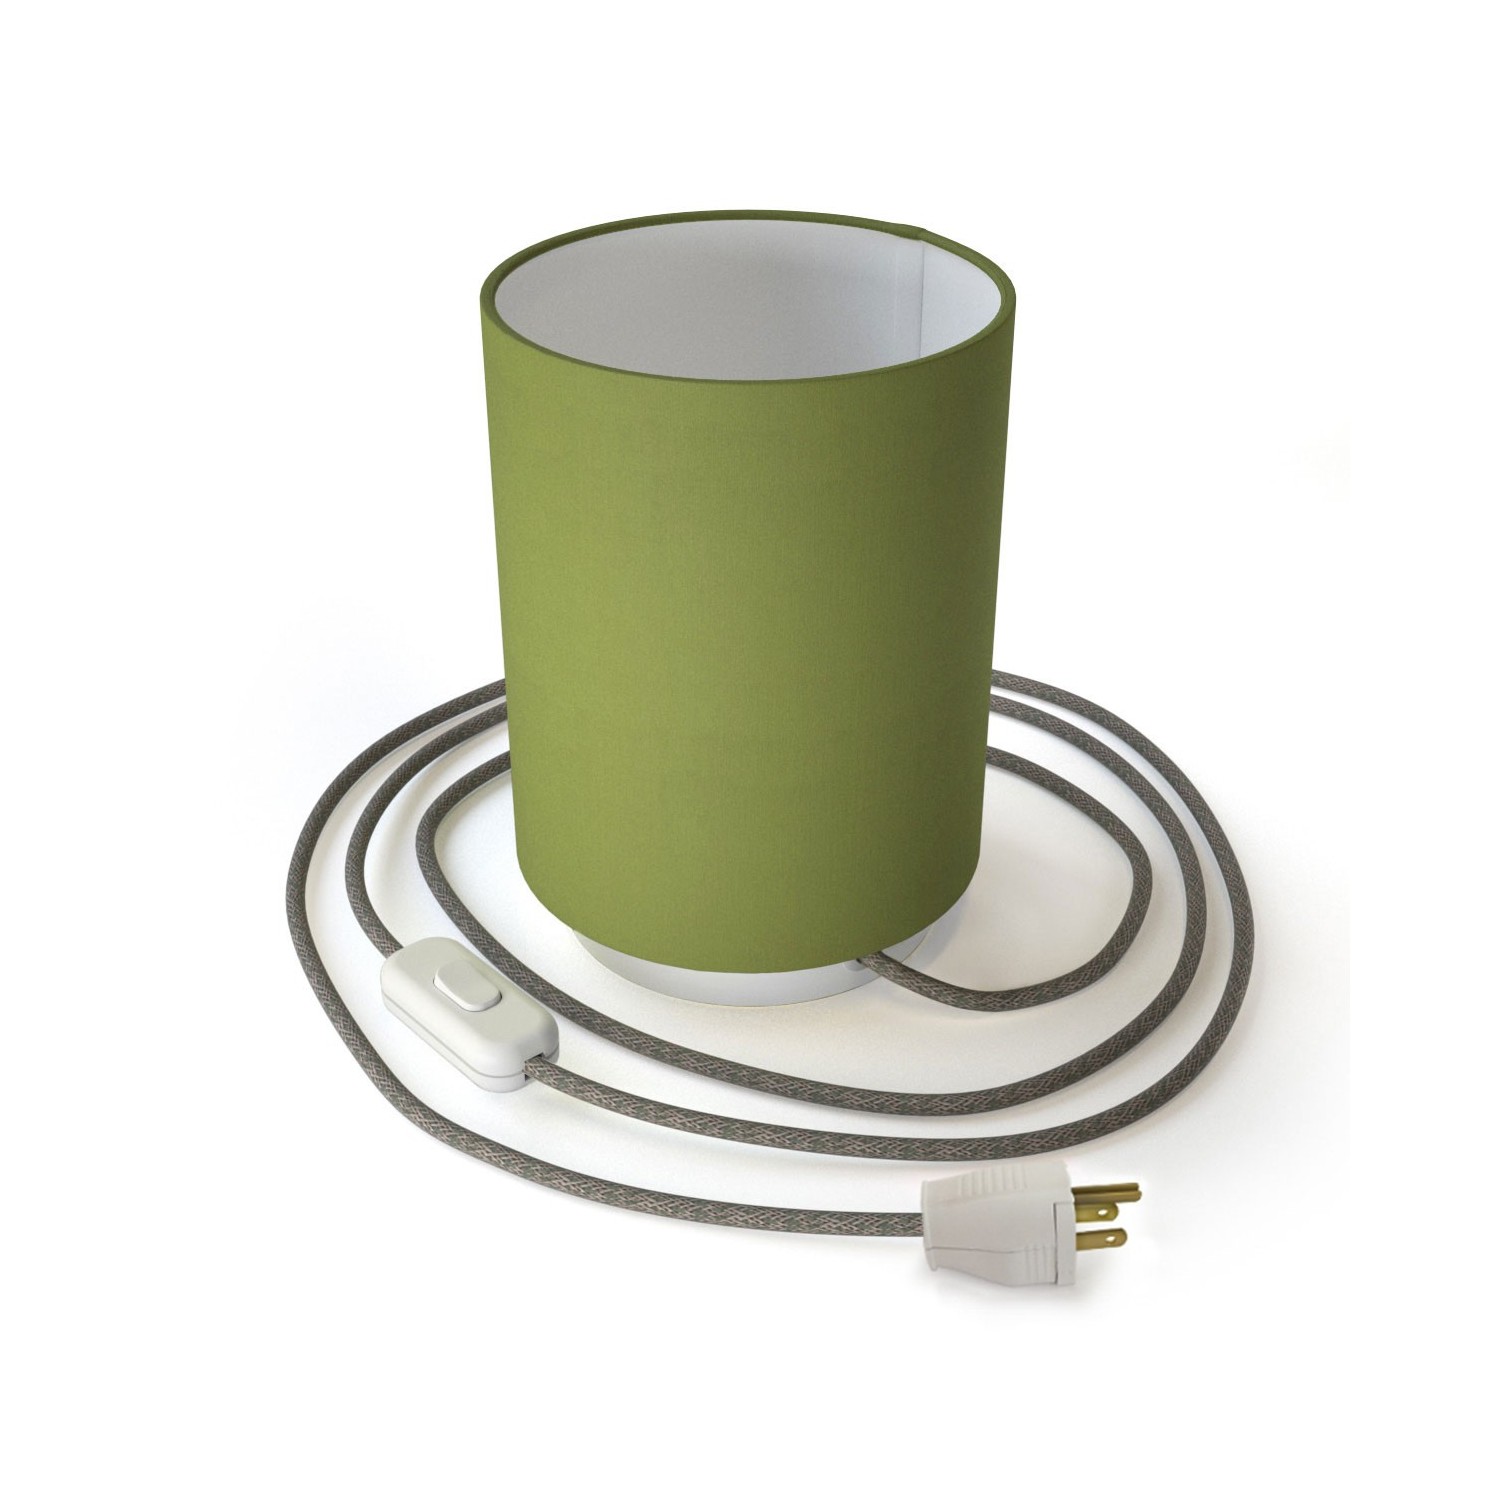 Posaluce de metal con pantalla de cilindro Verde Oliva, con cable textil, interruptor y clavija